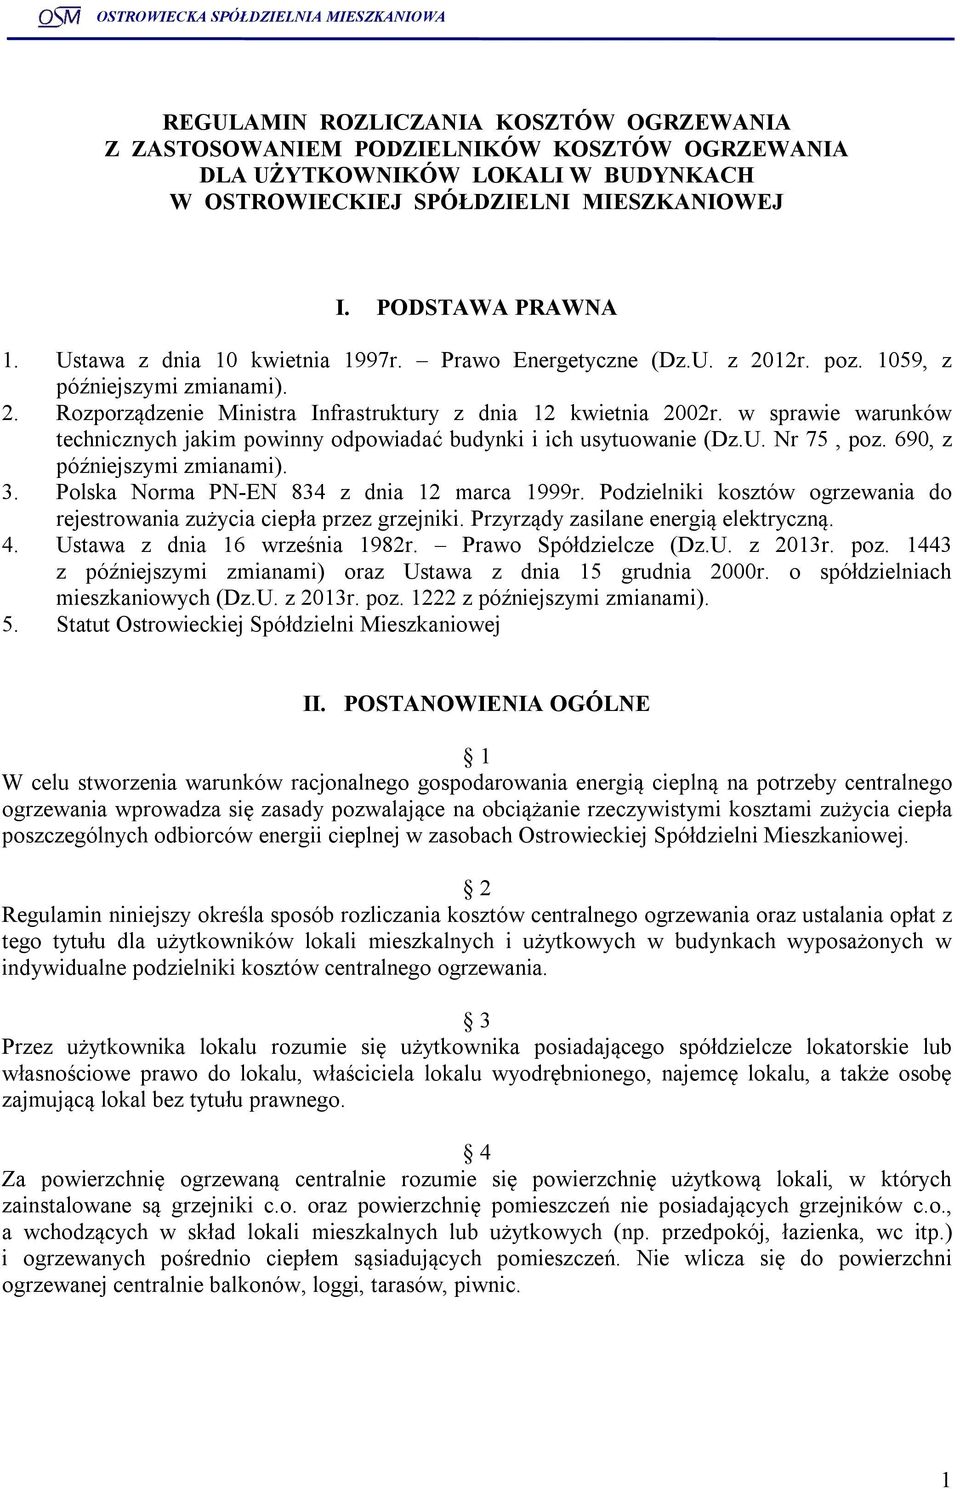 w sprawie warunków technicznych jakim powinny odpowiadać budynki i ich usytuowanie (Dz.U. Nr 75, poz. 690, z późniejszymi zmianami). 3. Polska Norma PN-EN 834 z dnia 12 marca 1999r.